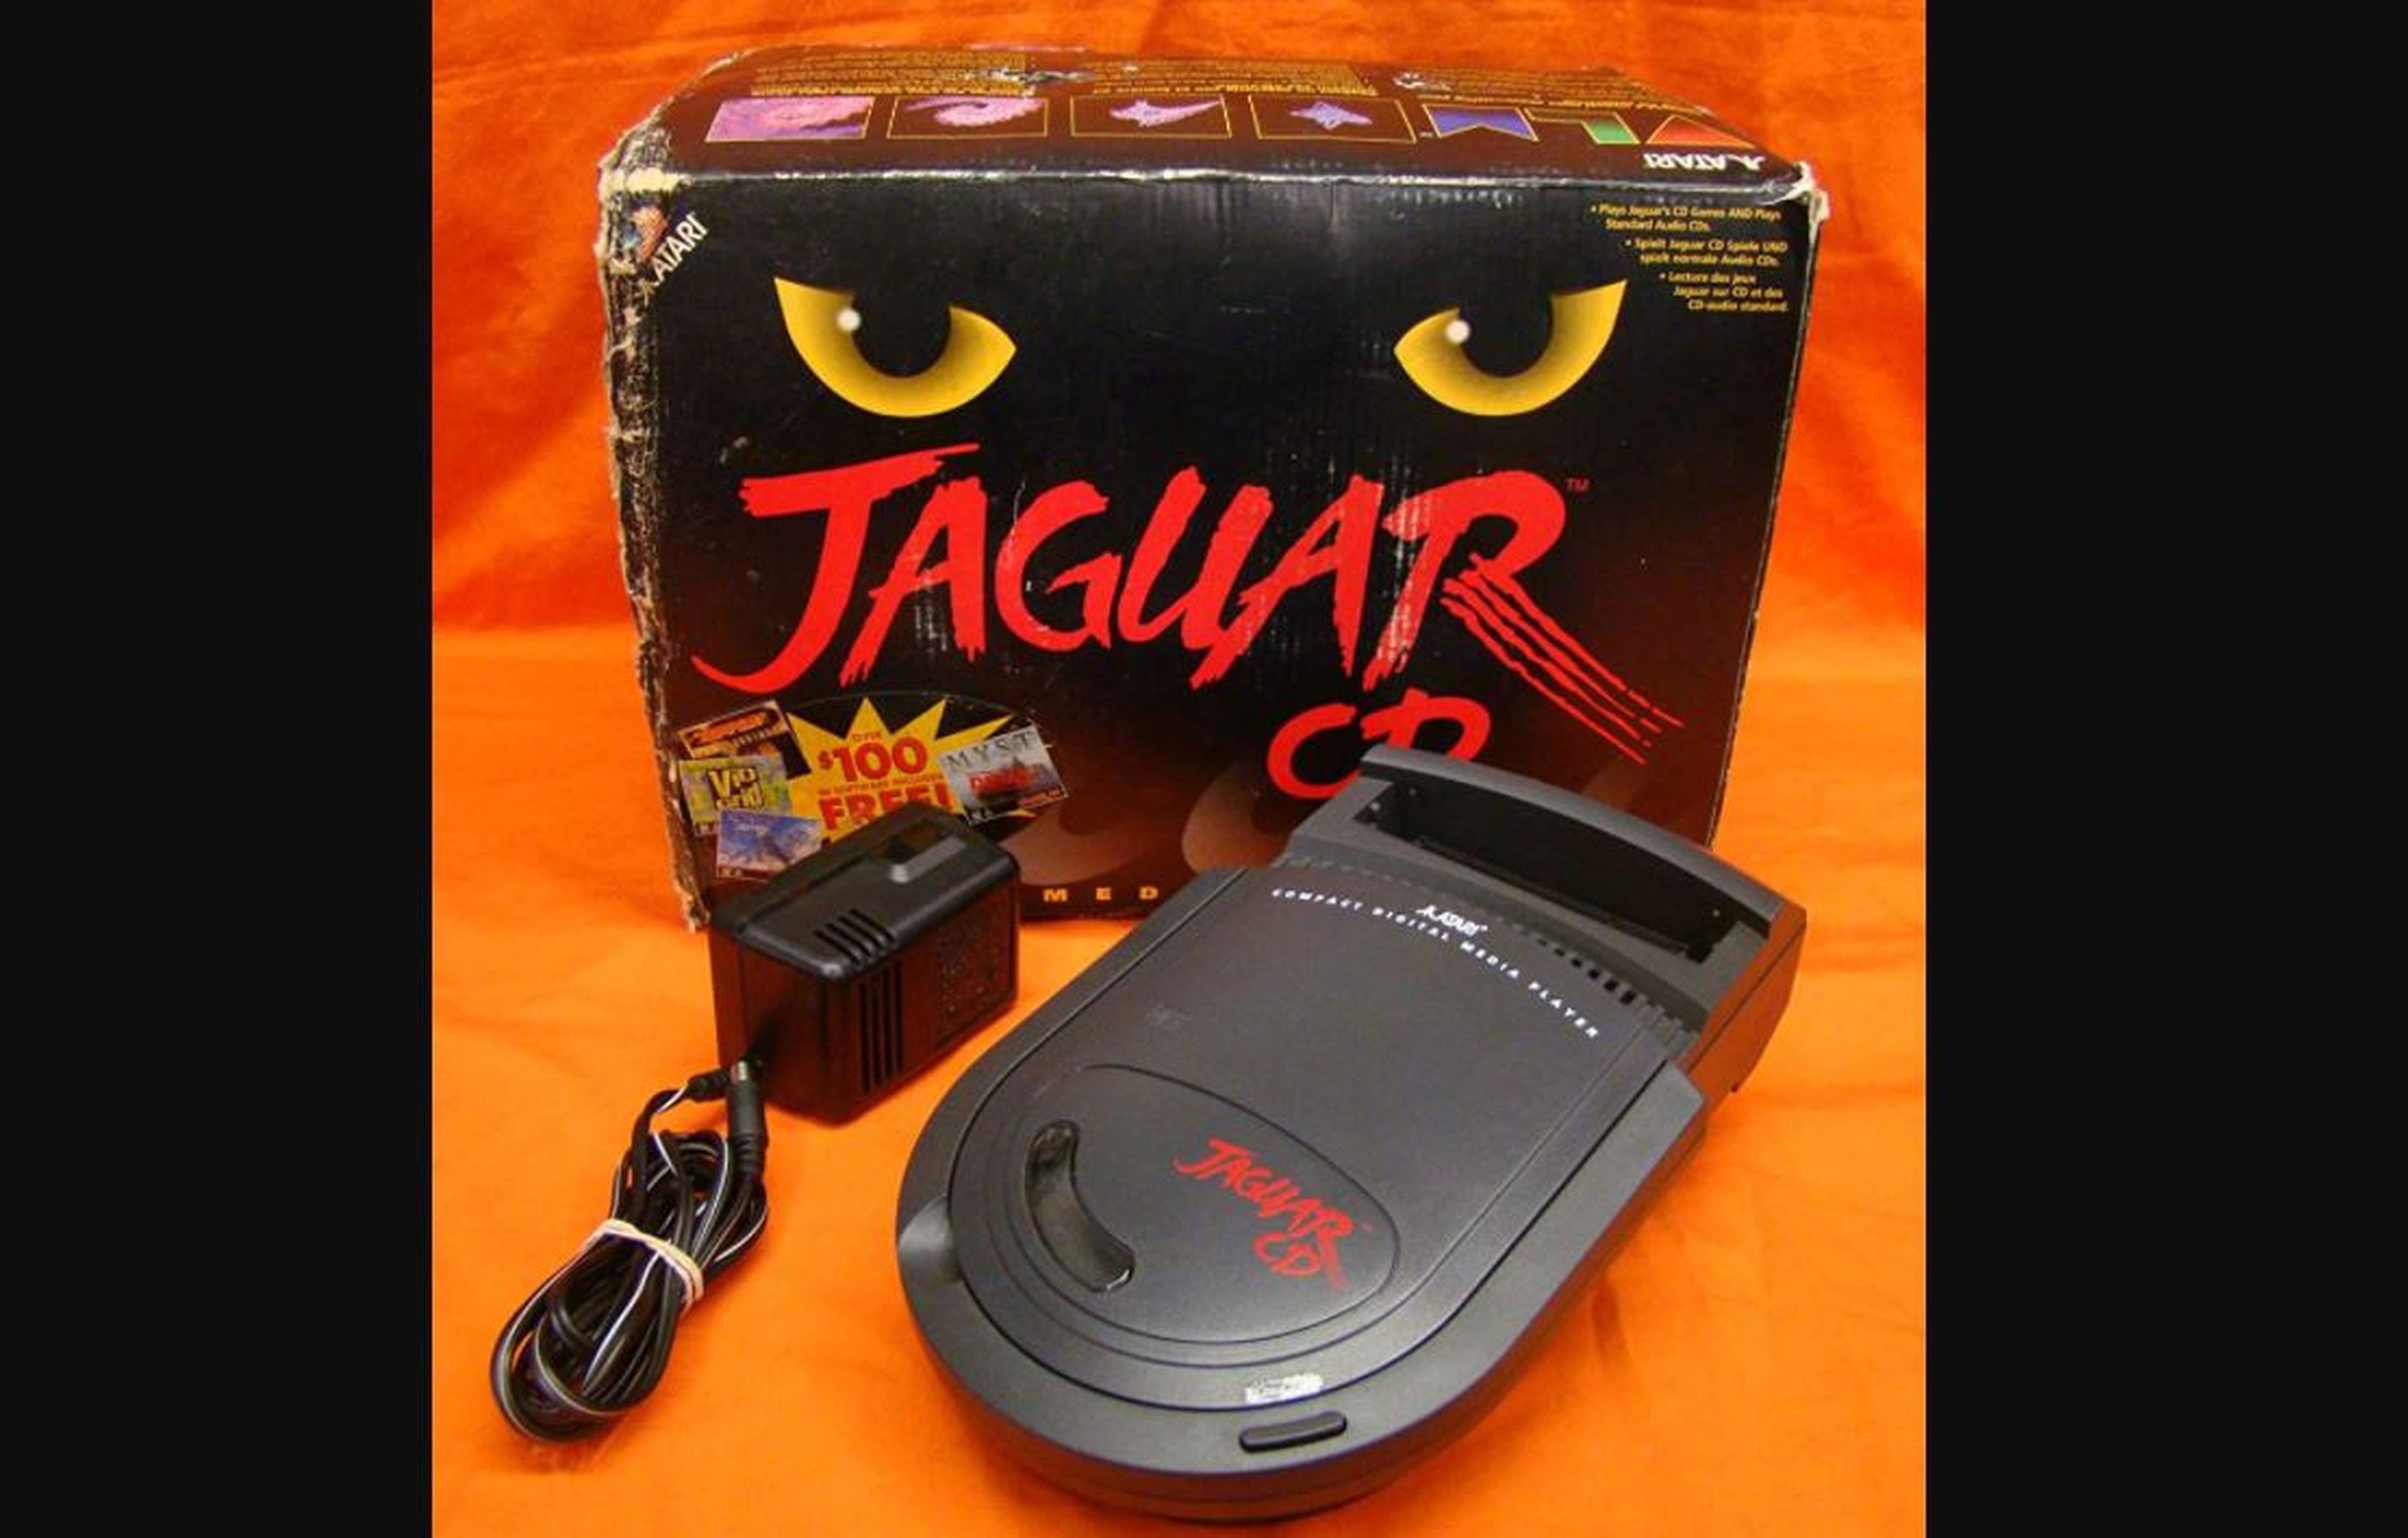 Atari Jaguar CD